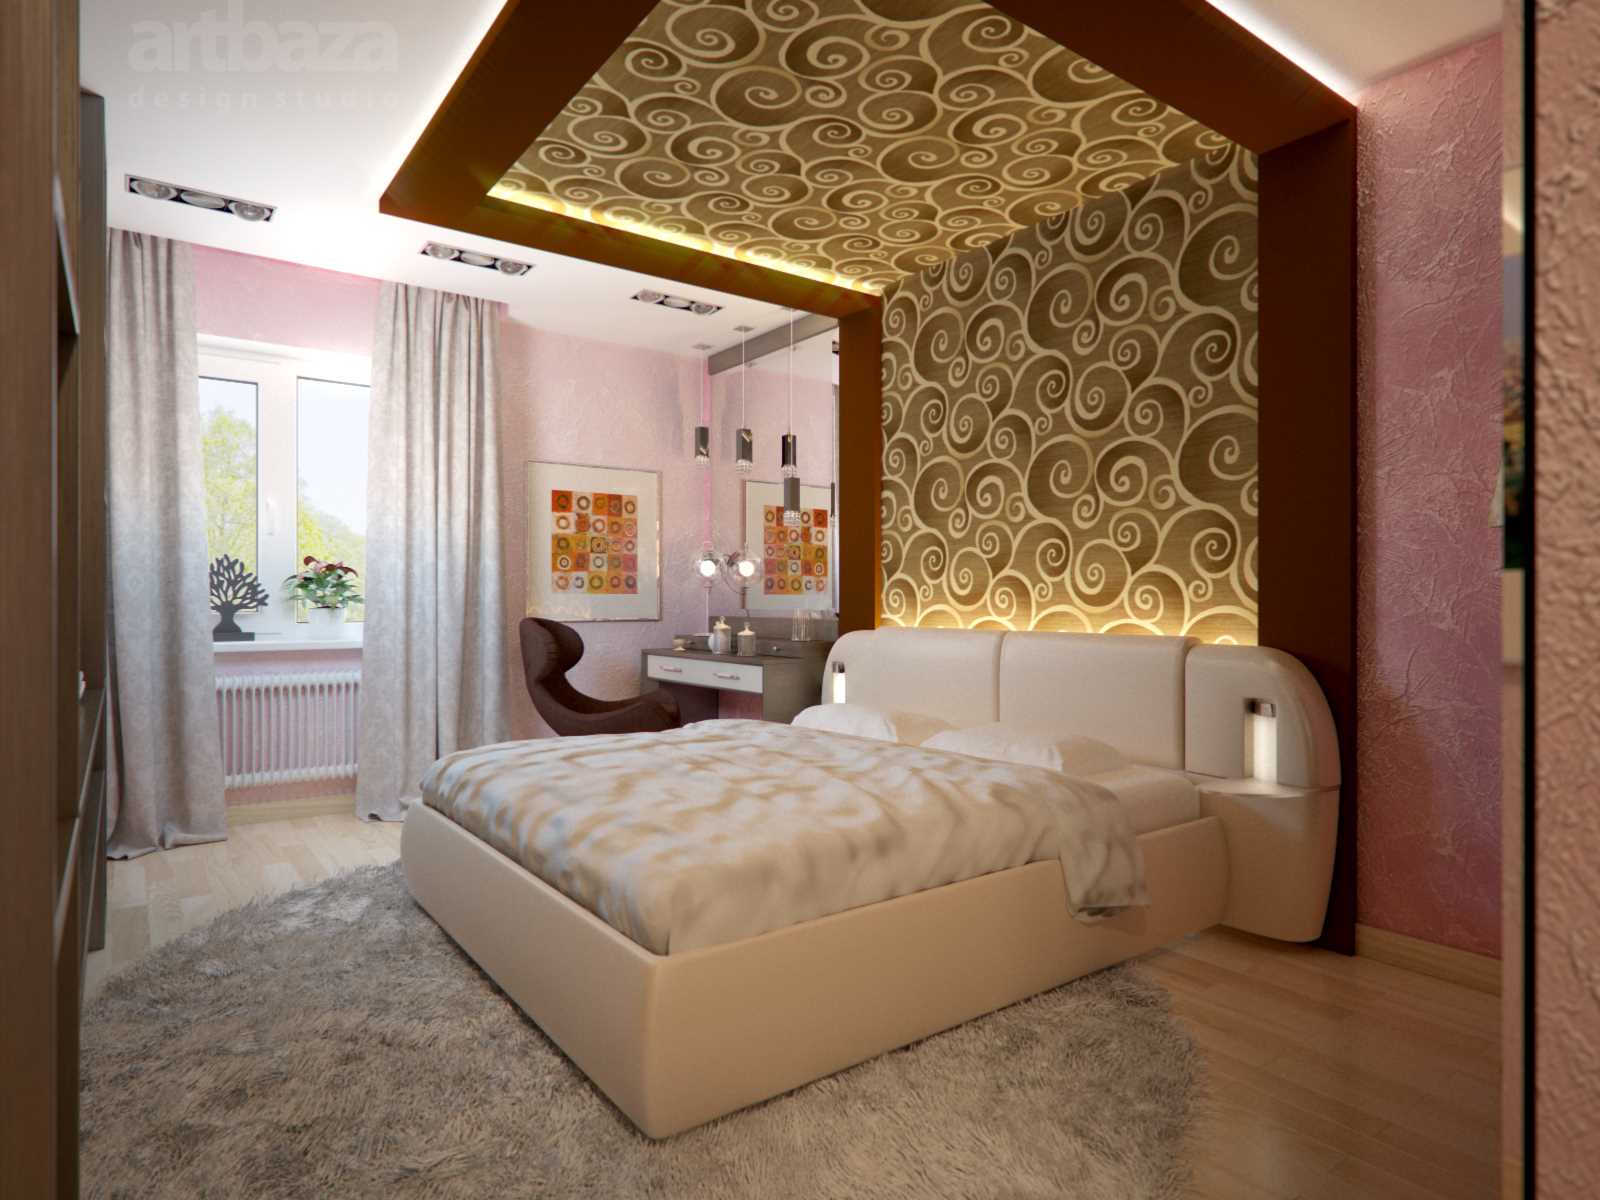 خيار لأسلوب غرفة نوم مزينة بألوان زاهية